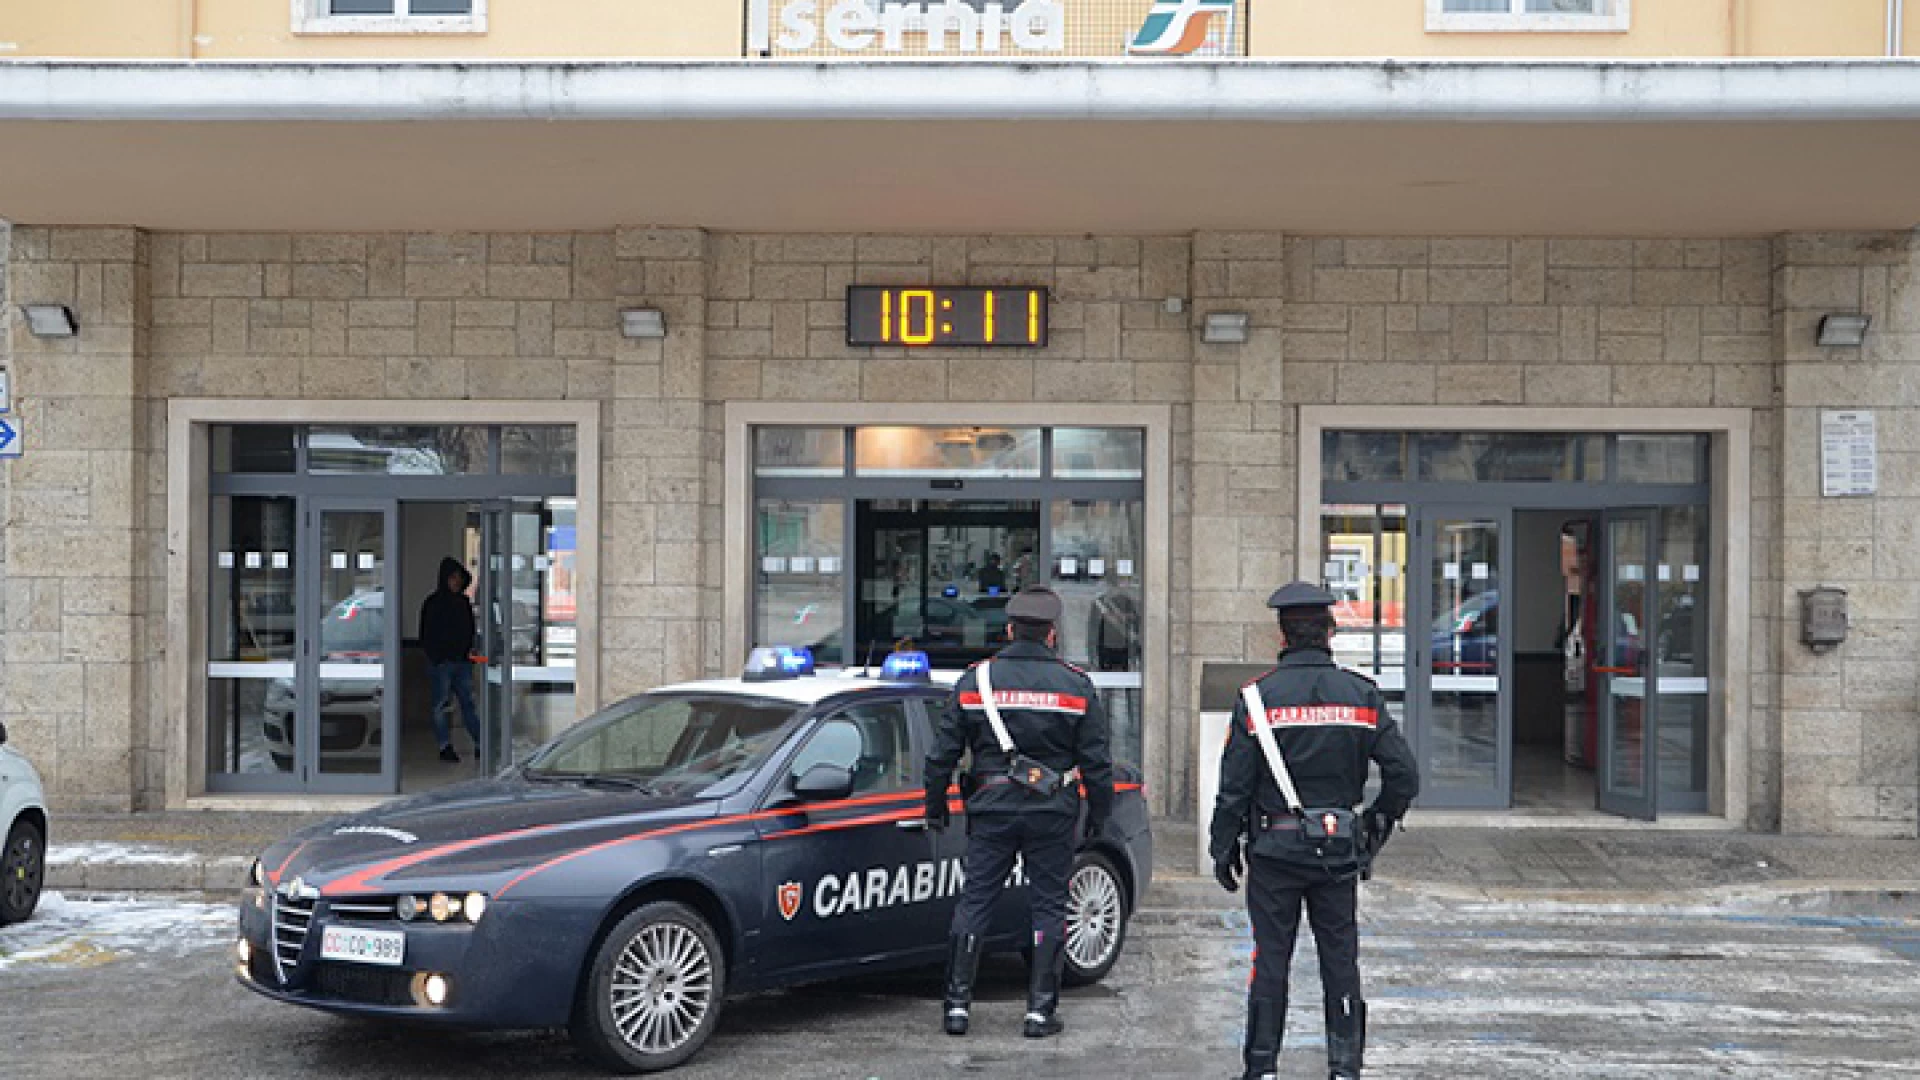 Isernia: Controlli dei Carabinieri presso la Stazione Ferroviaria, due giovani denunciati per detenzione e spaccio di stupefacenti.